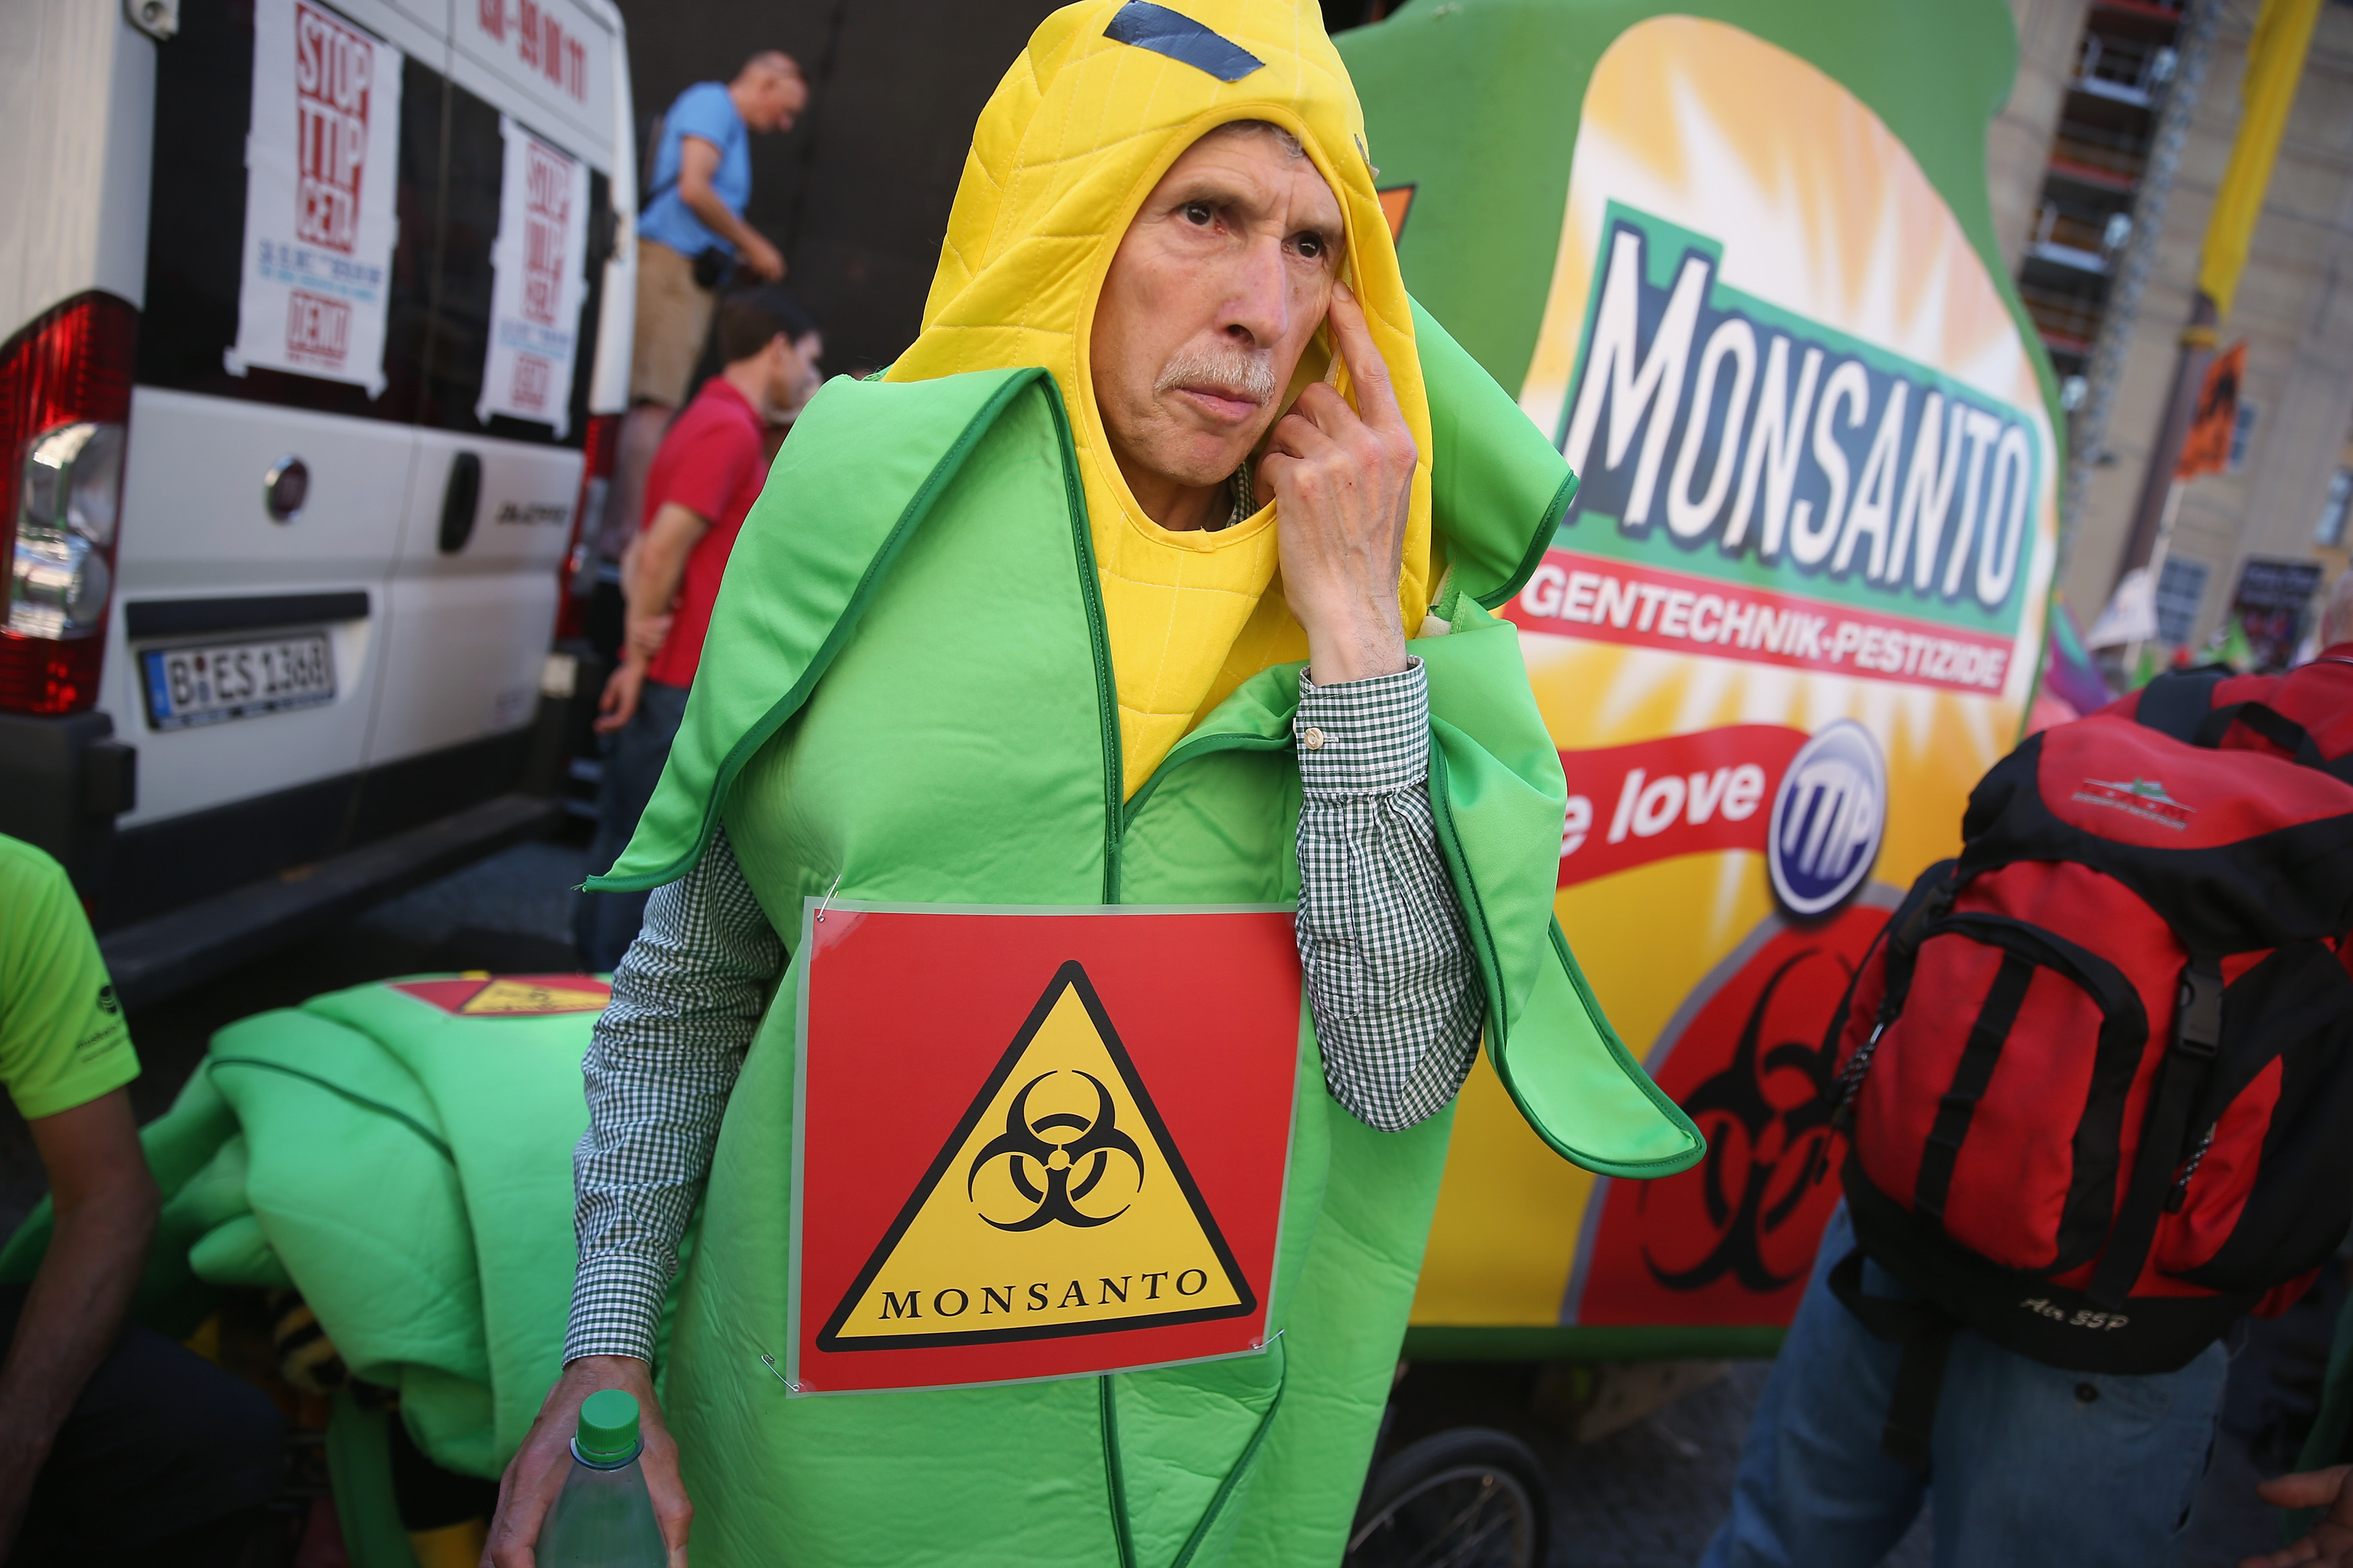 NRW-Umweltminister warnt vor Bayer-Monsanto-Deal – „Gentechnische Produkte durch die Hintertür“ befürchtet